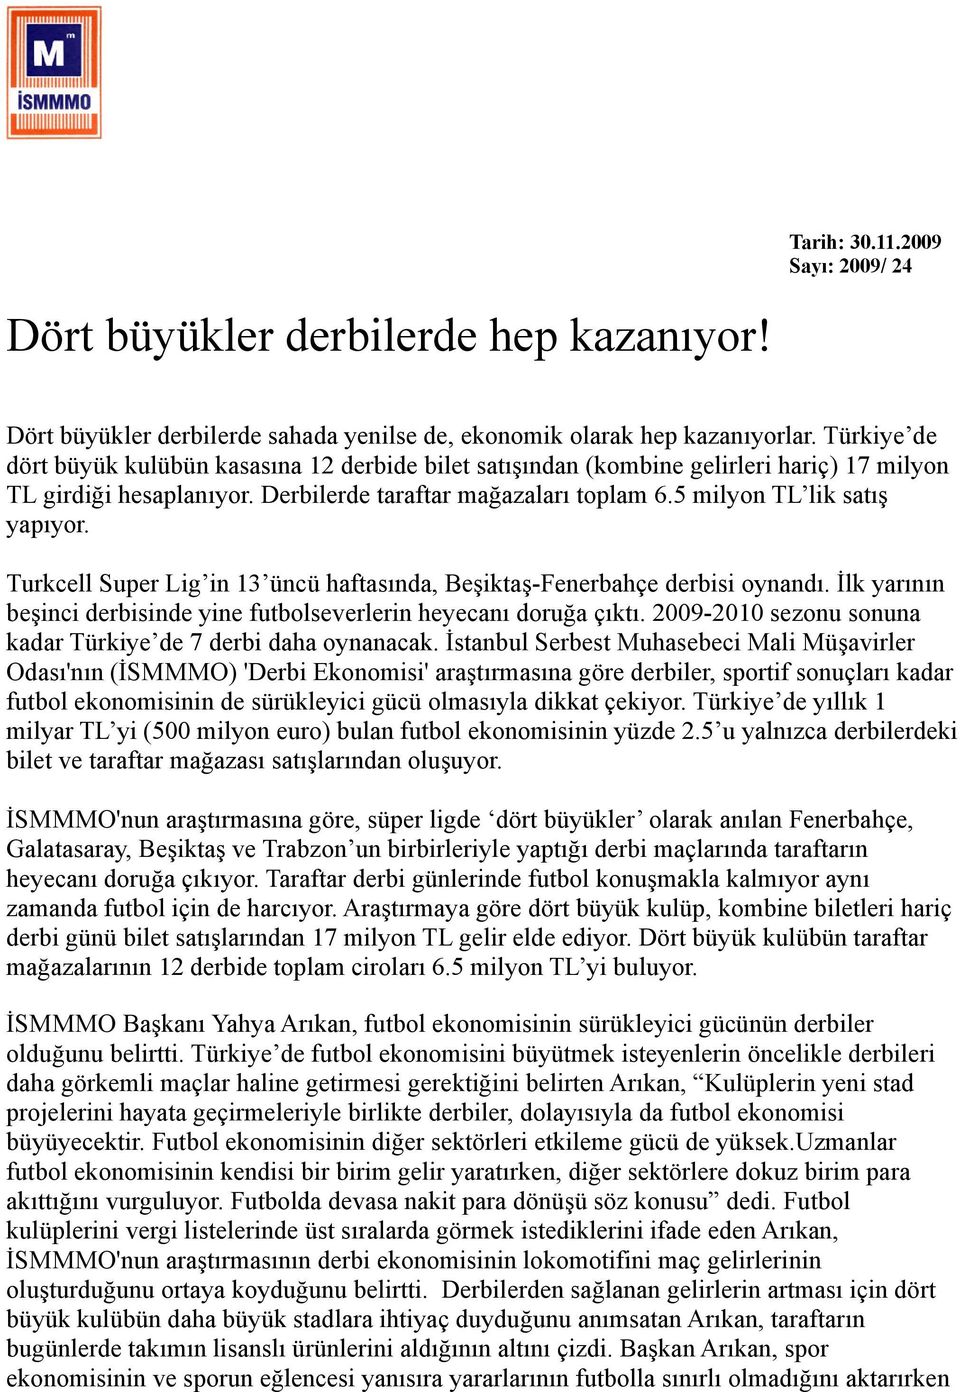 Turkcell Super Lig in 13 üncü haftasında, Beşiktaş-Fenerbahçe derbisi oynandı. İlk yarının beşinci derbisinde yine futbolseverlerin heyecanı doruğa çıktı.